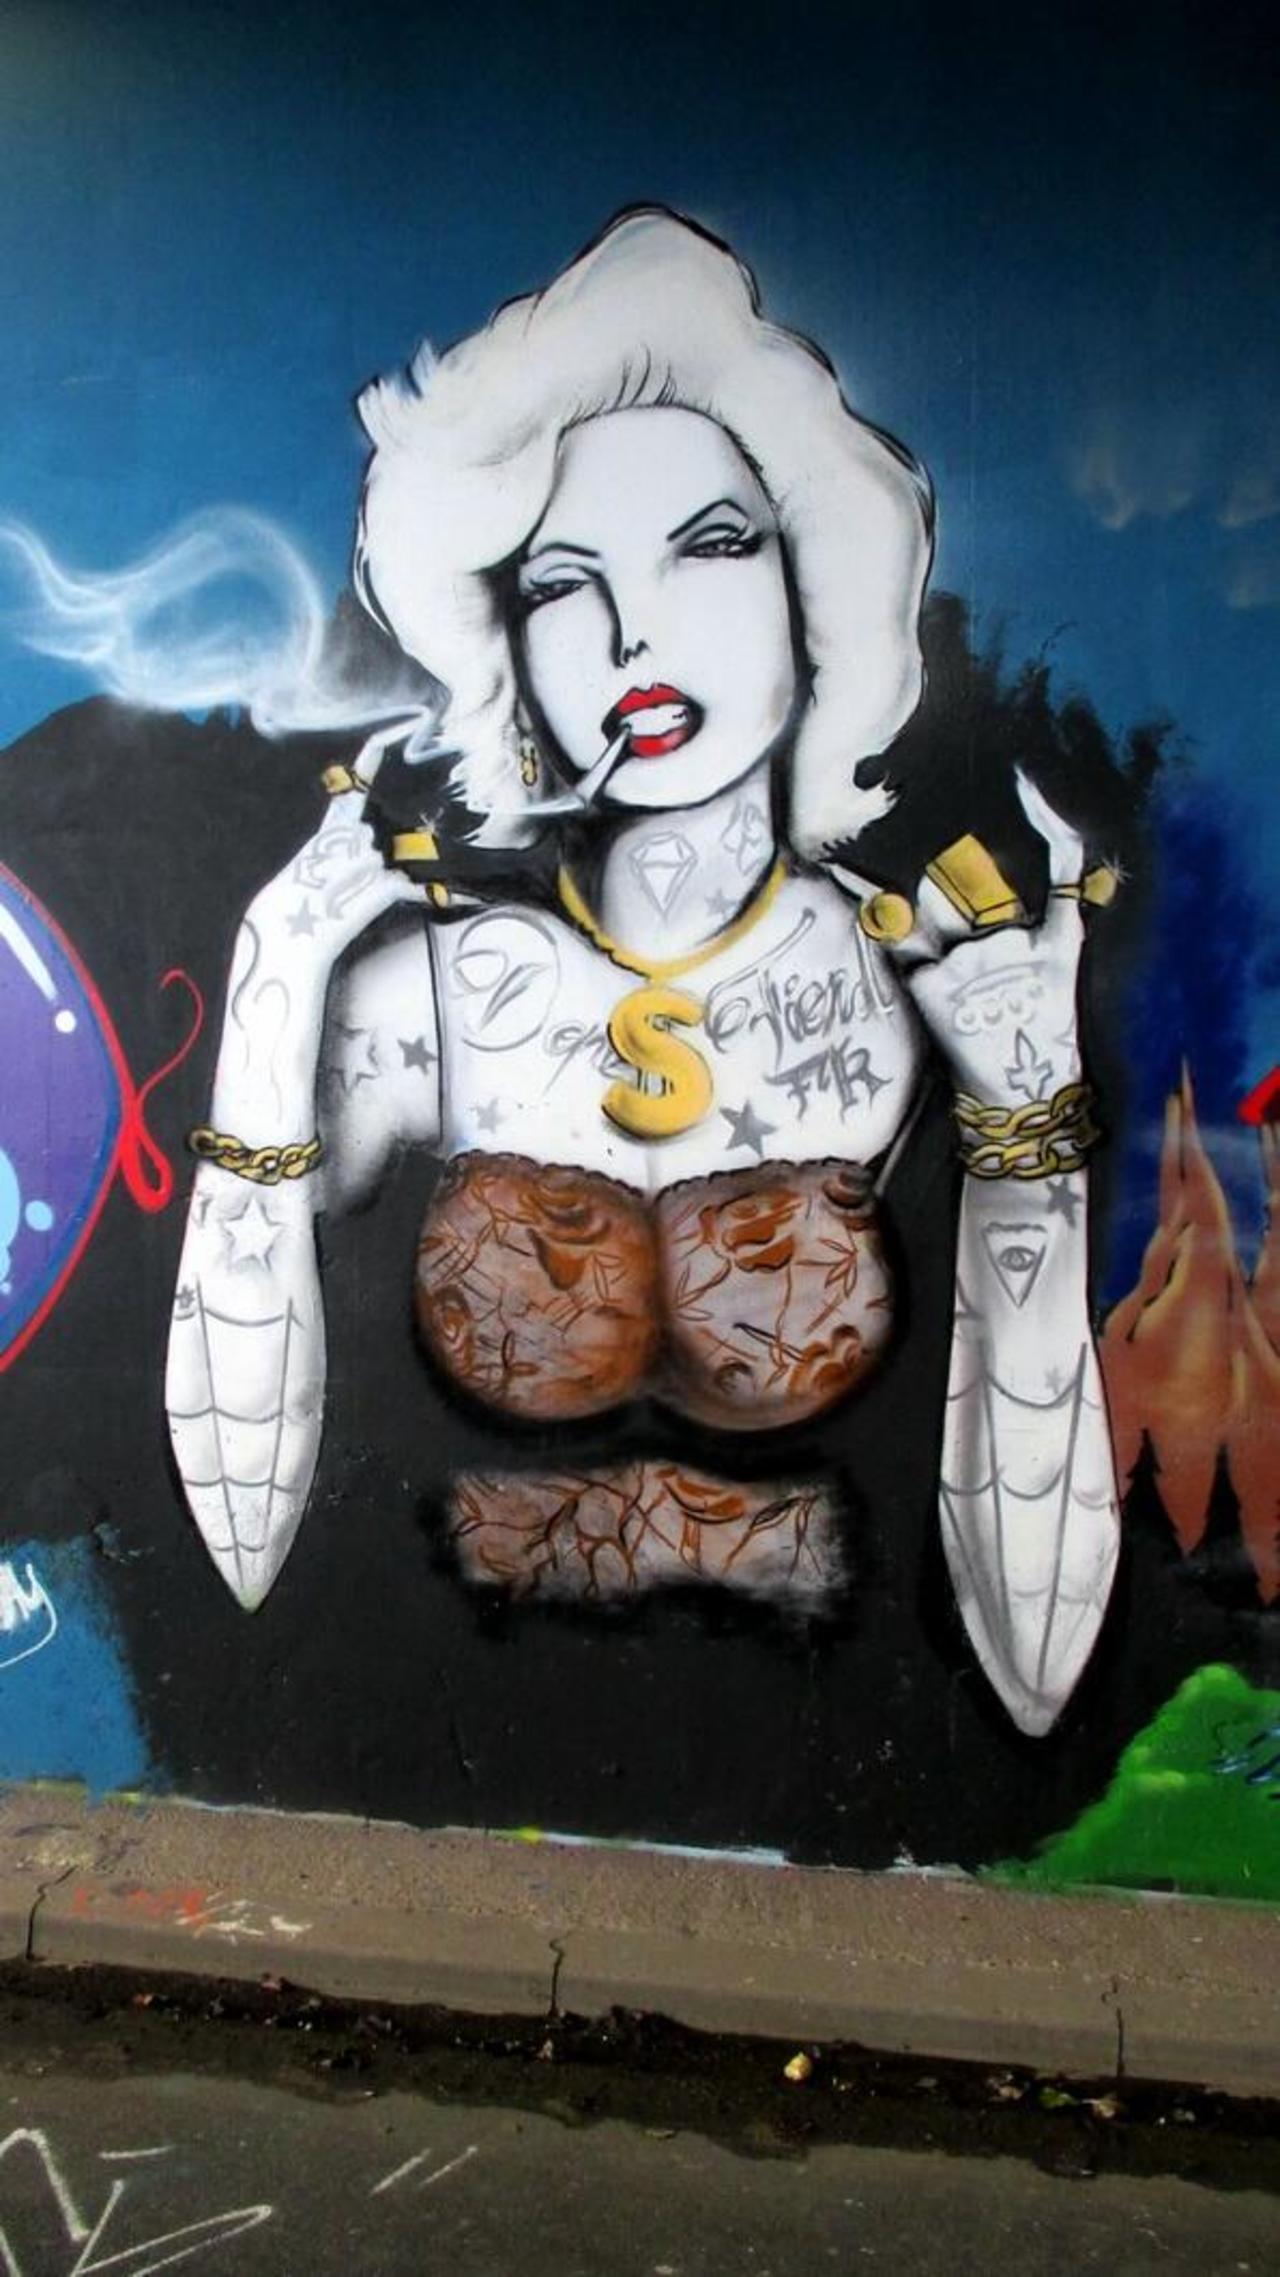 RT "@RRoedman: smoking woman #streetart #graffiti #mural  in #Delft #Netherlands, 2 pics at
 http://wallpaintss.blogspot.nl/ http://t.co/ZbXwS48X8Q”